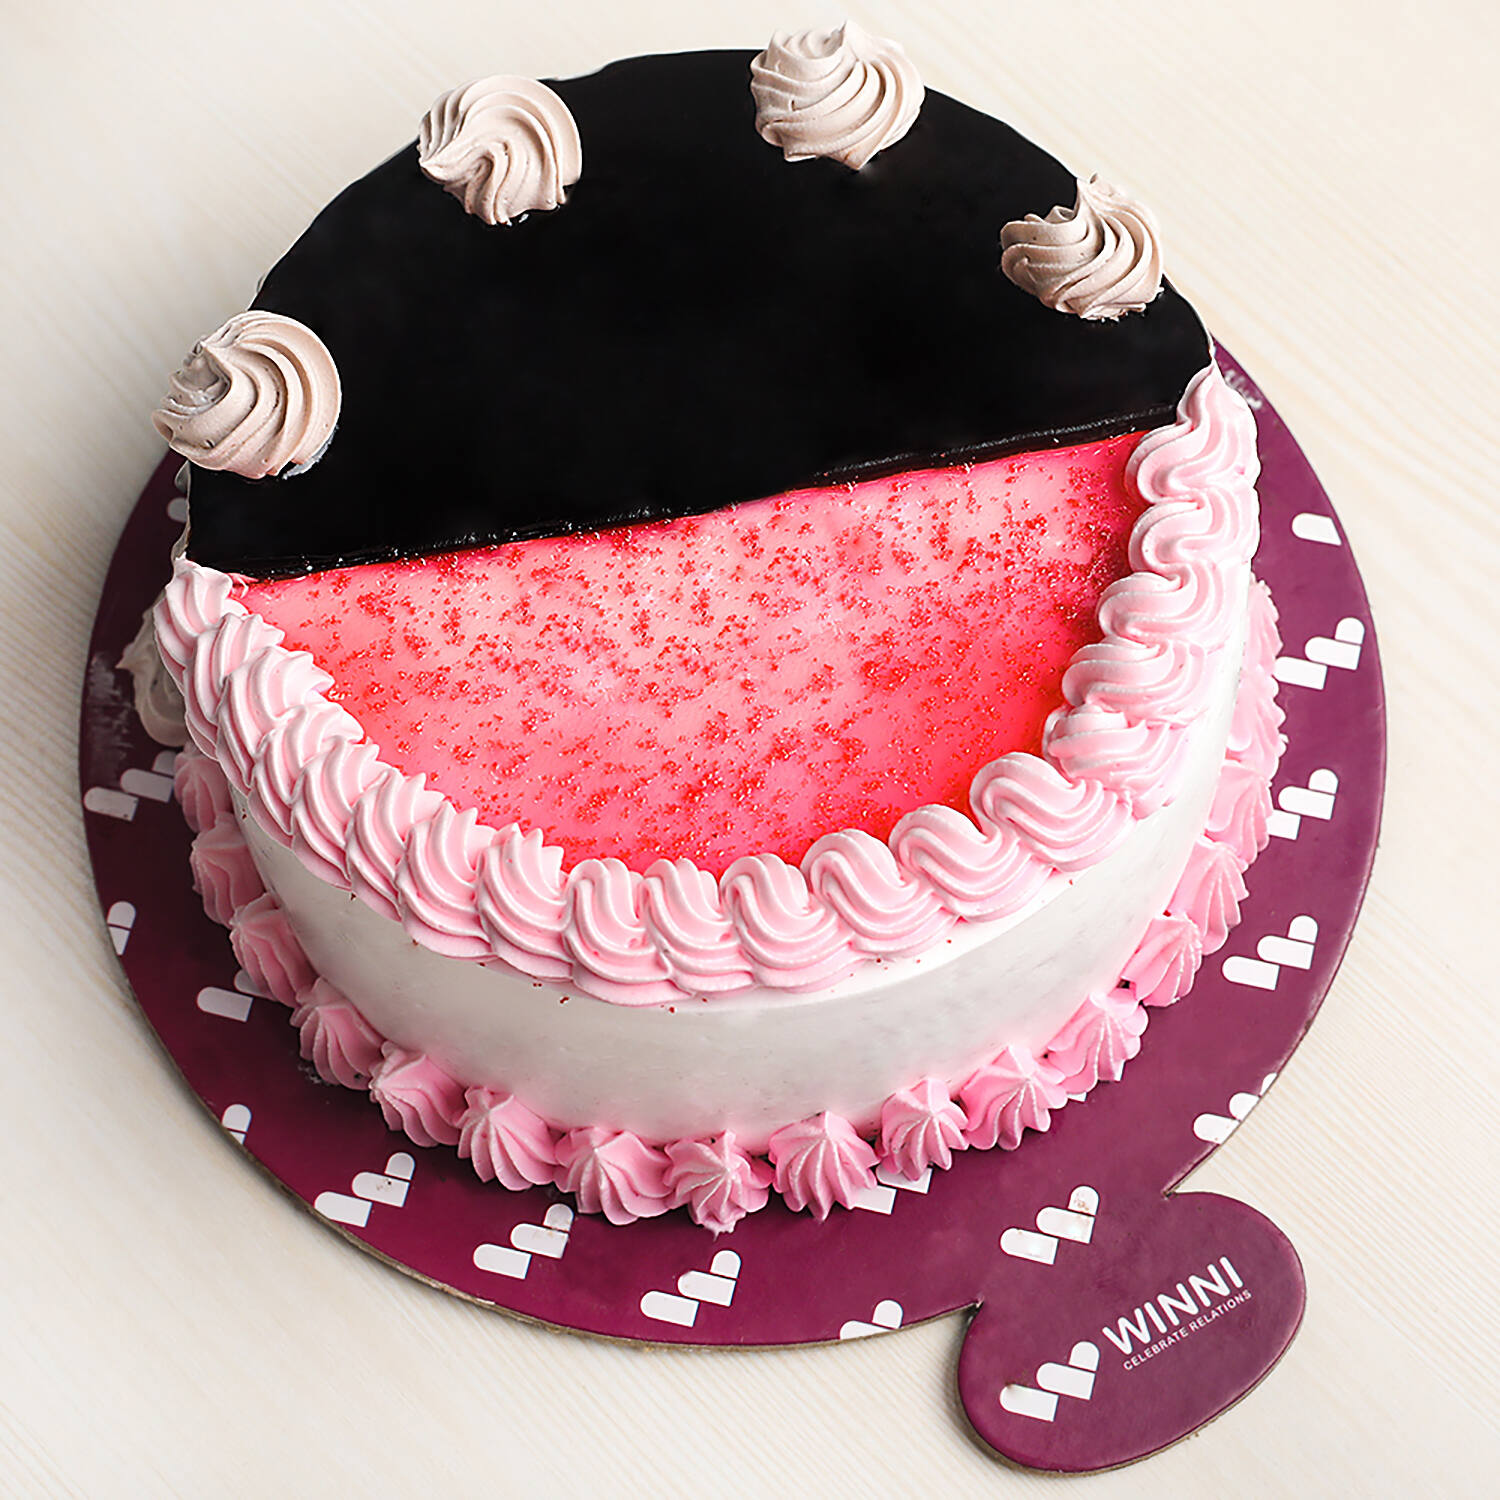 Strawberry Vanilla Birthday Cake | Winni.in